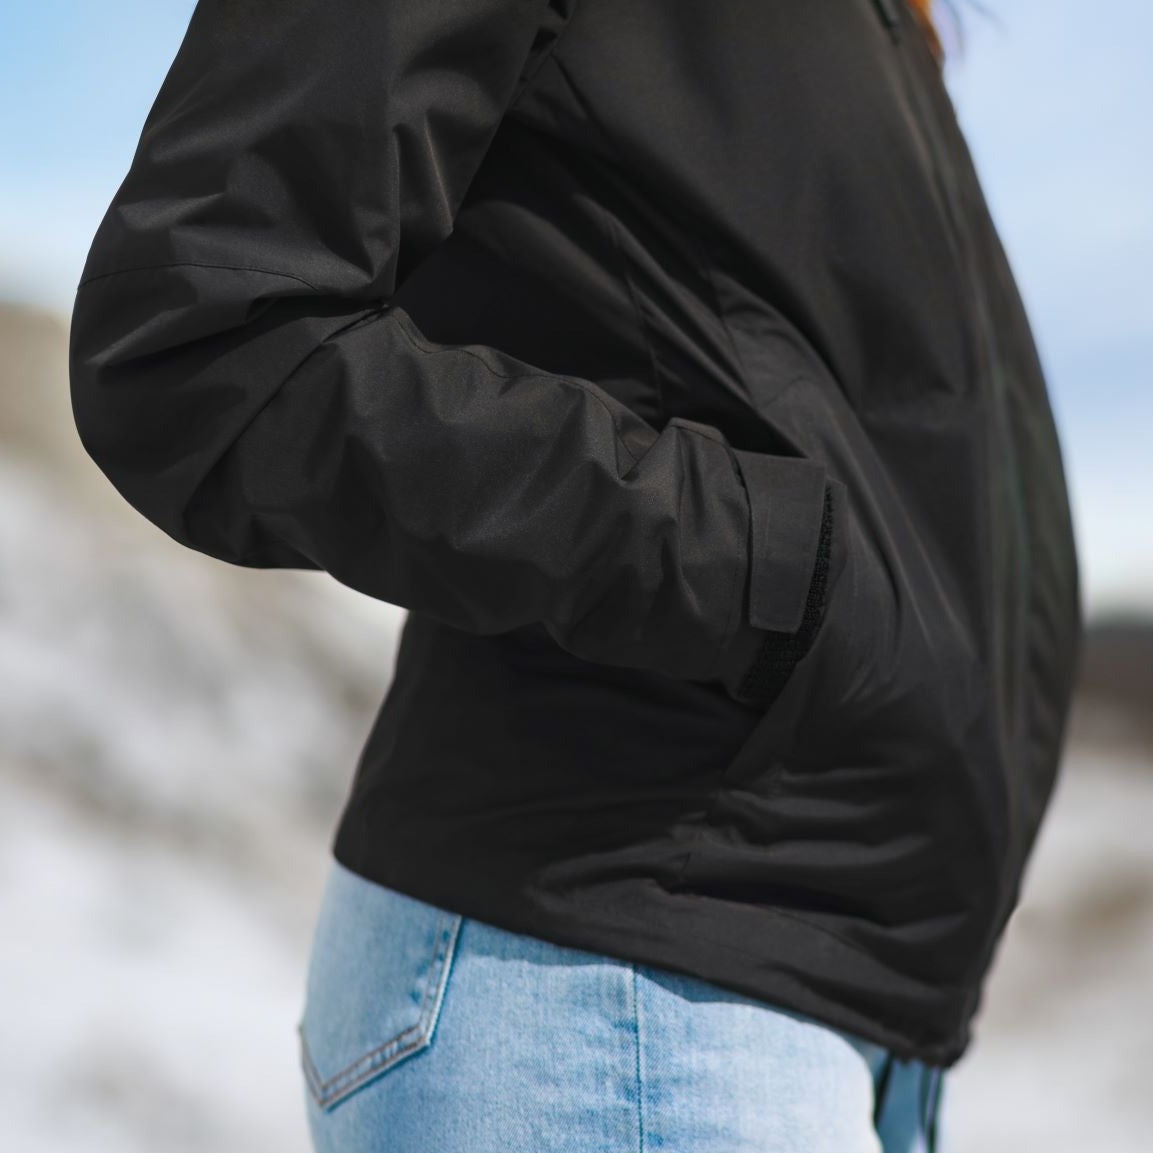 Black electric warming jacket